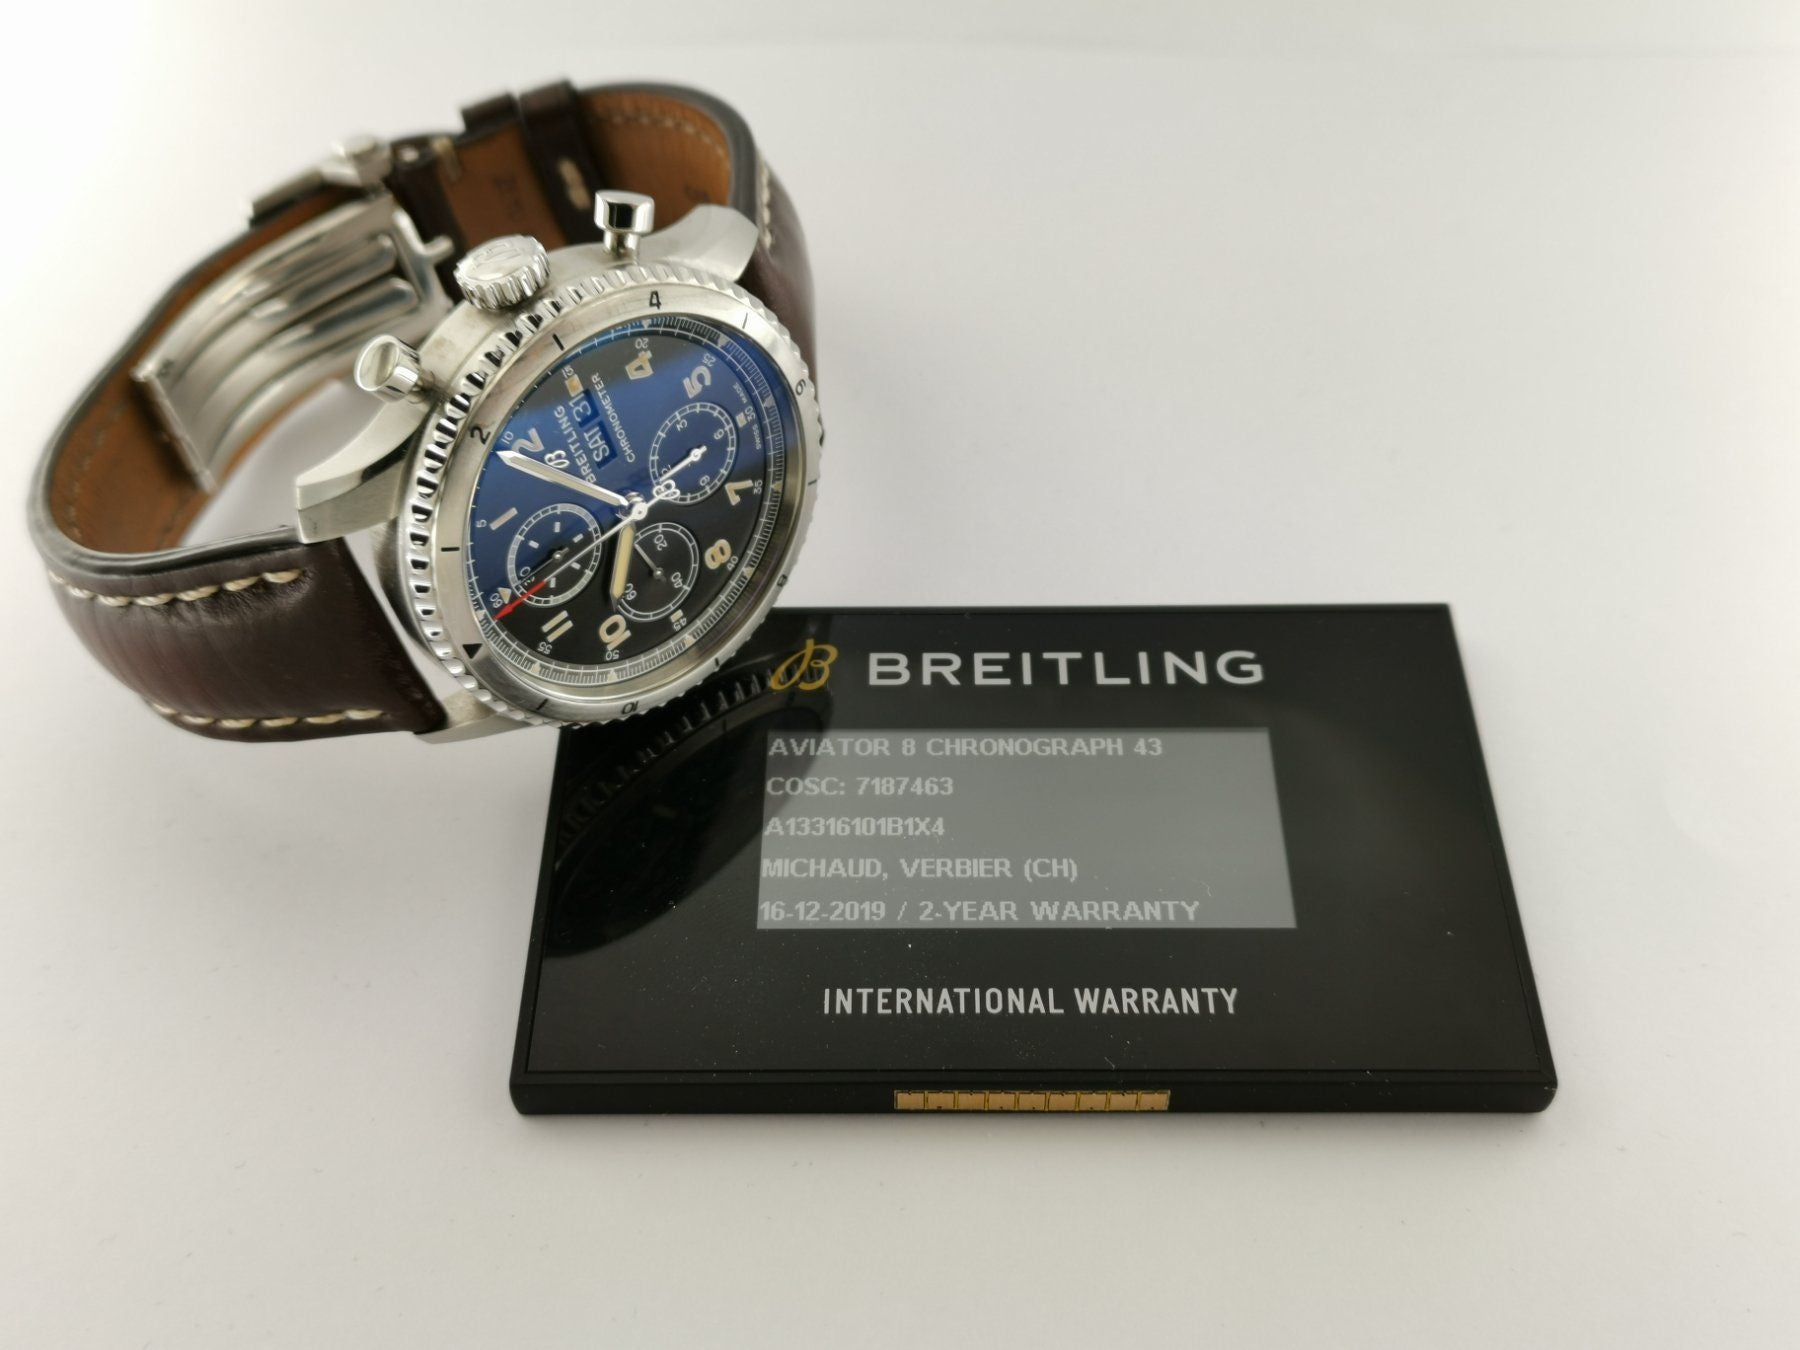 Breitling Aviator 8 Chronograph 43